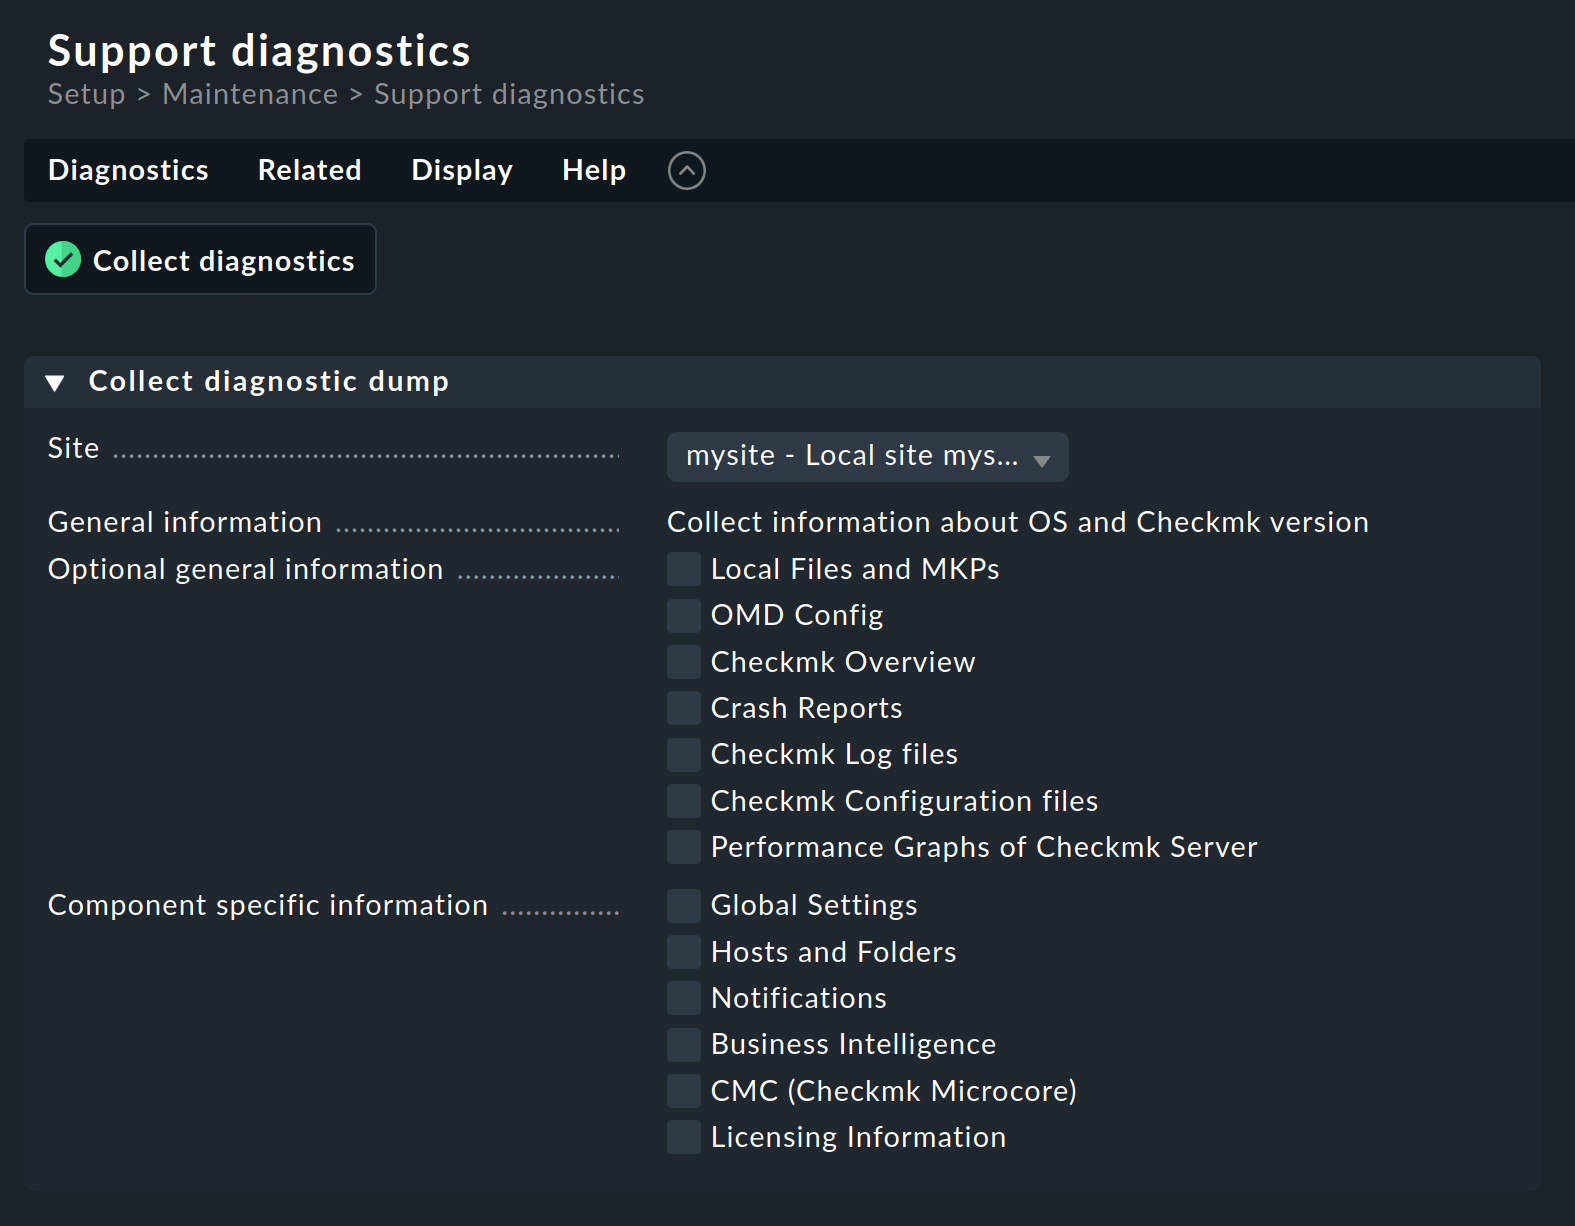 Support diagnostics options.